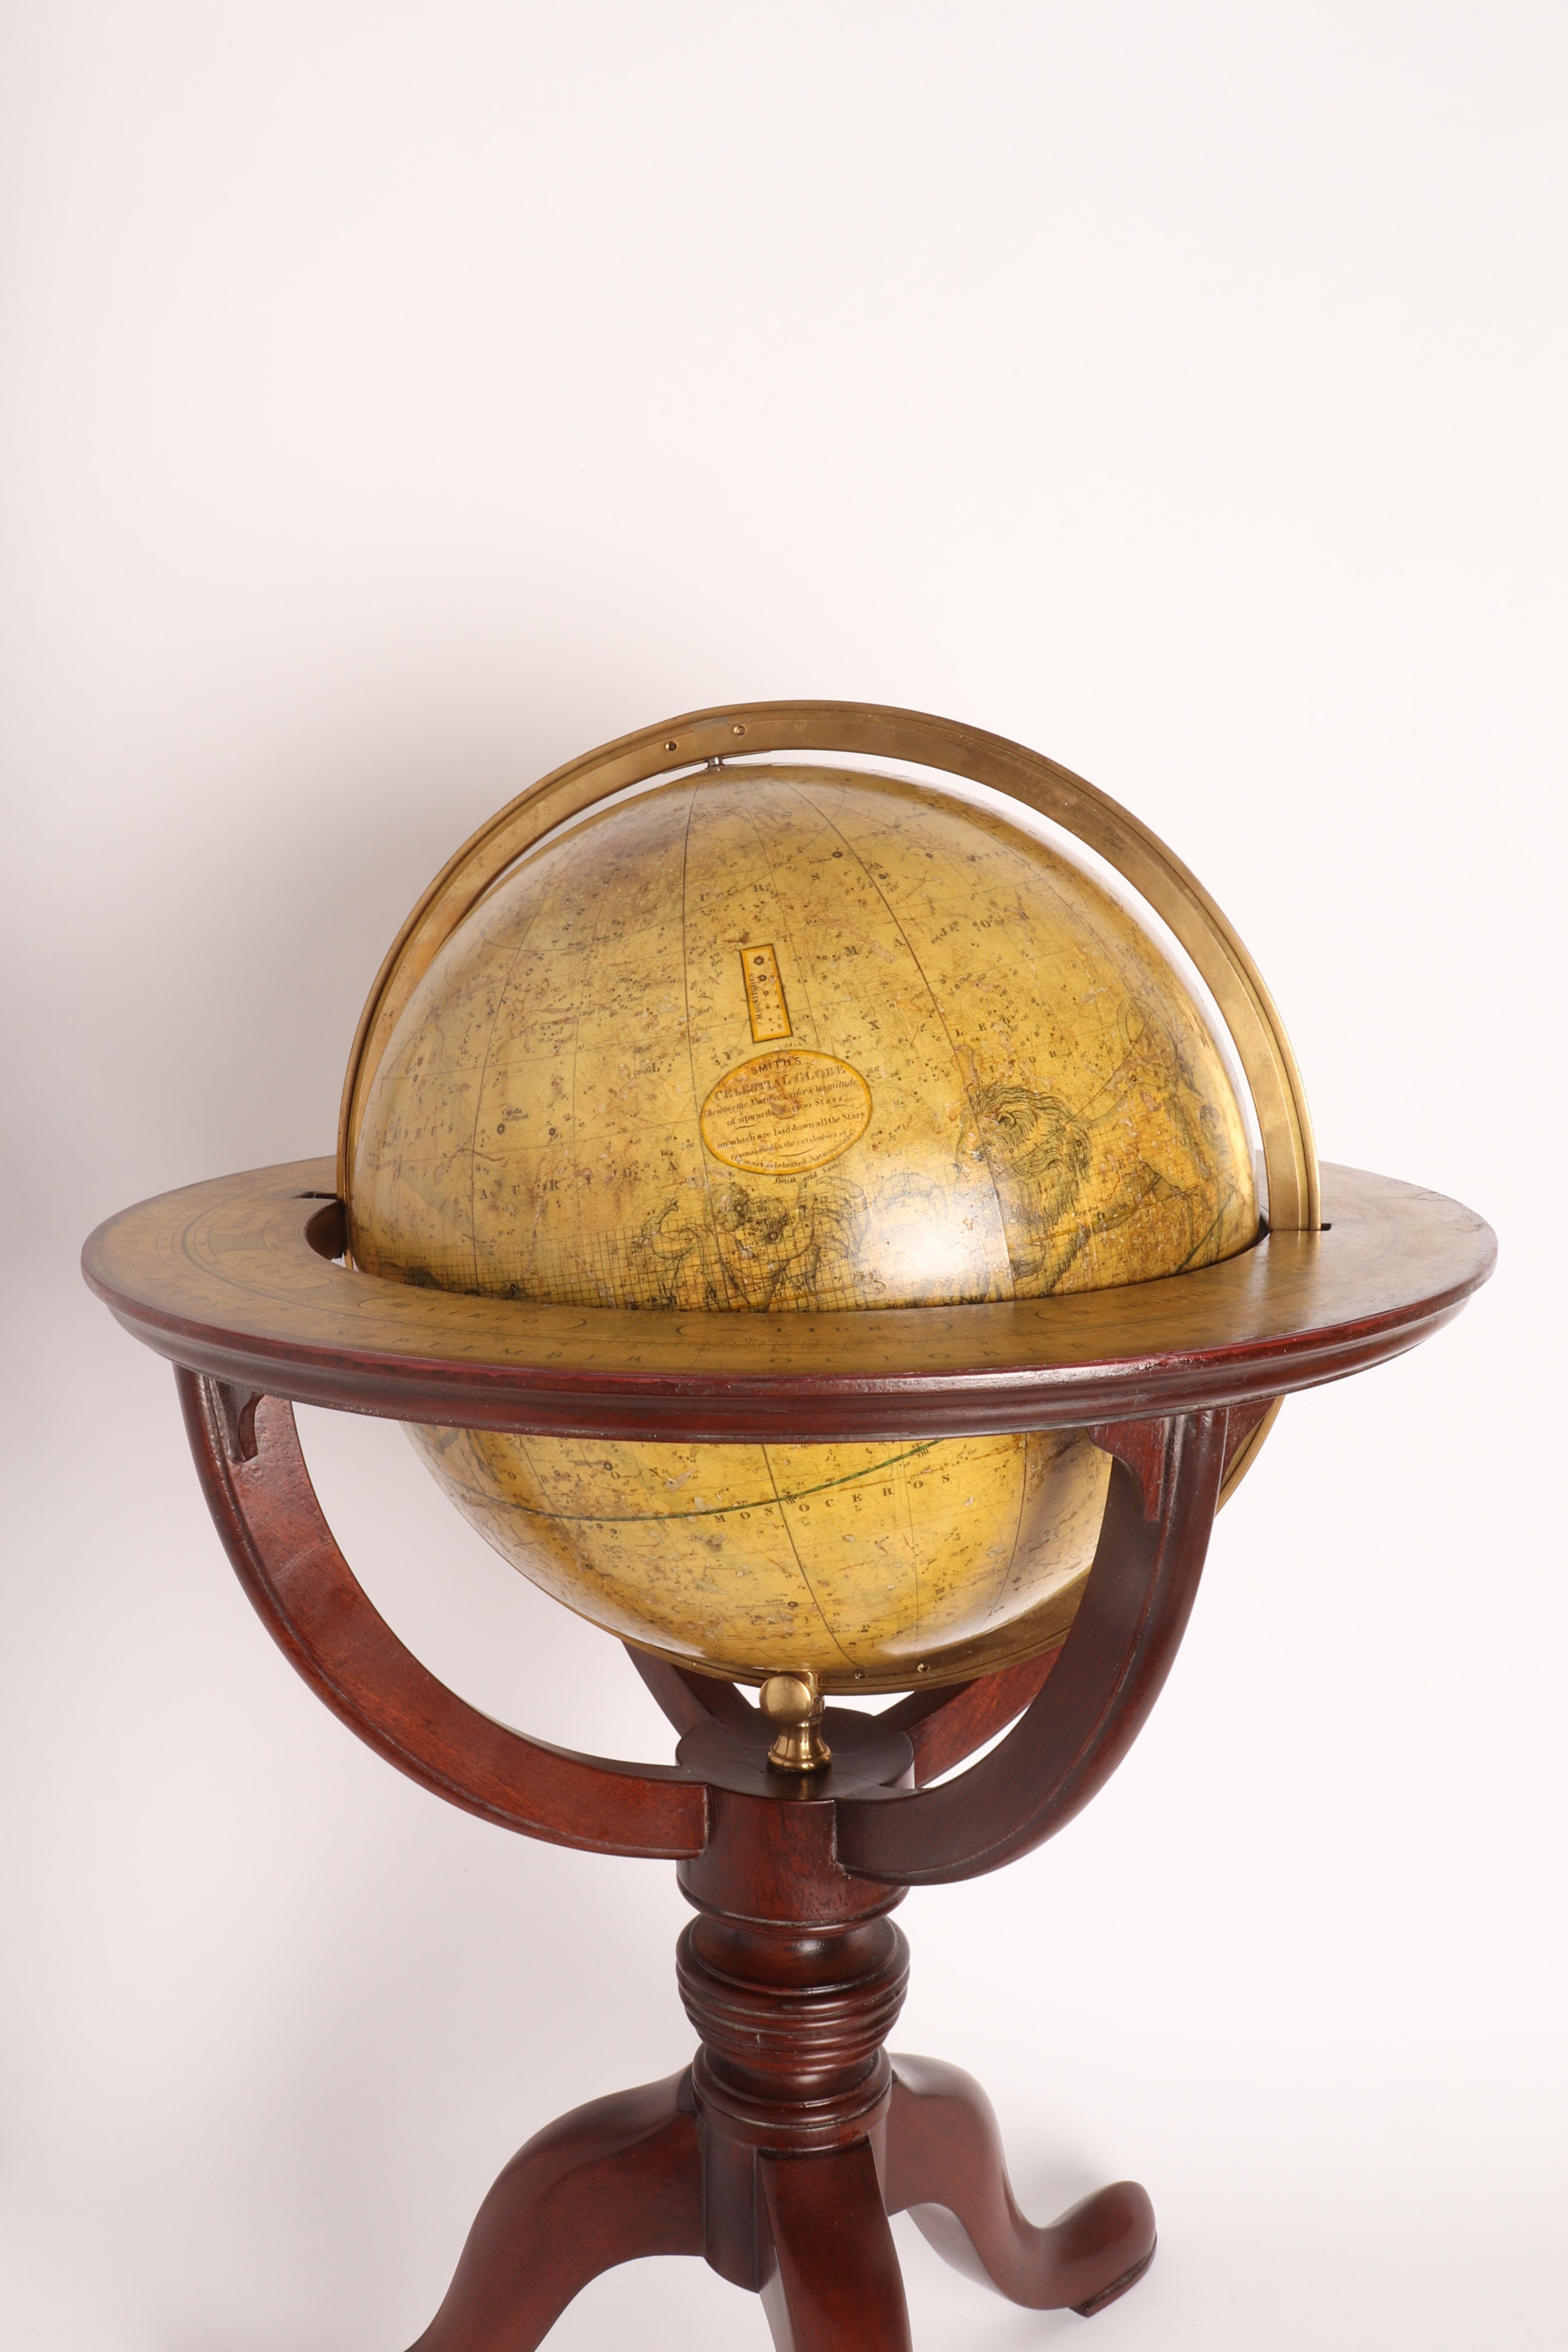 British Celestial Globe Signed Smith, London, 1820